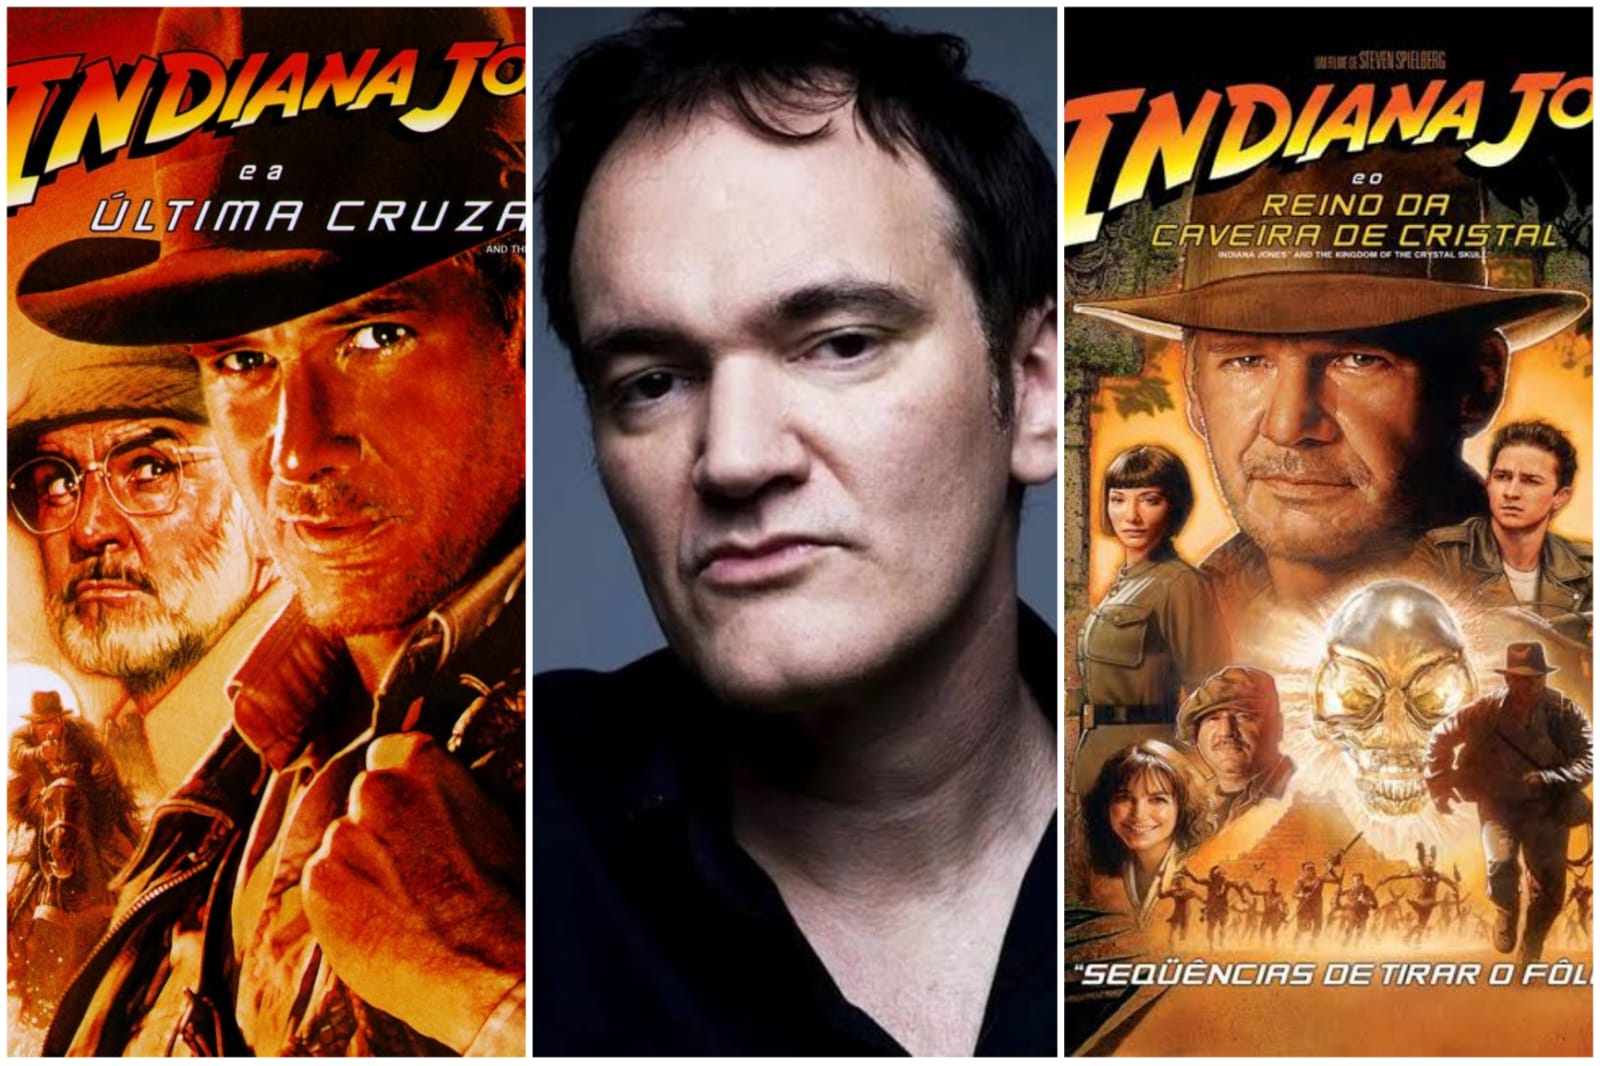 Filmes da franquia 'Indiana Jones' ganham versões remasterizadas